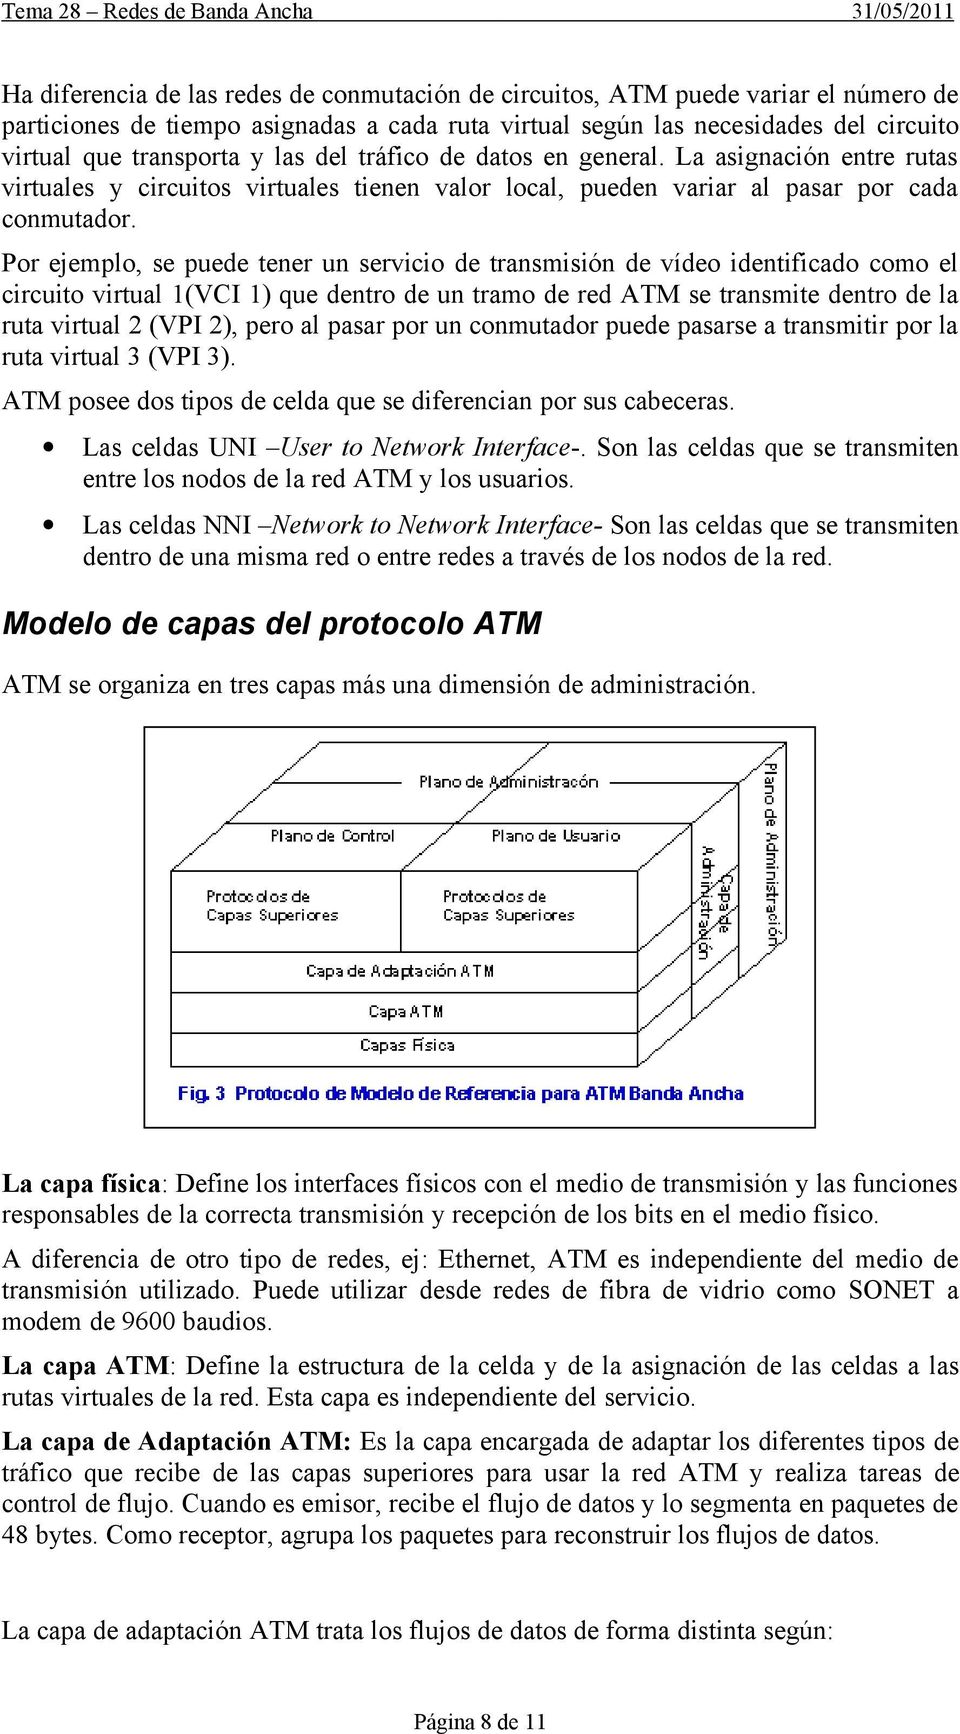 Por ejemplo, se puede tener un servicio de transmisión de vídeo identificado como el circuito virtual 1(VCI 1) que dentro de un tramo de red ATM se transmite dentro de la ruta virtual 2 (VPI 2), pero